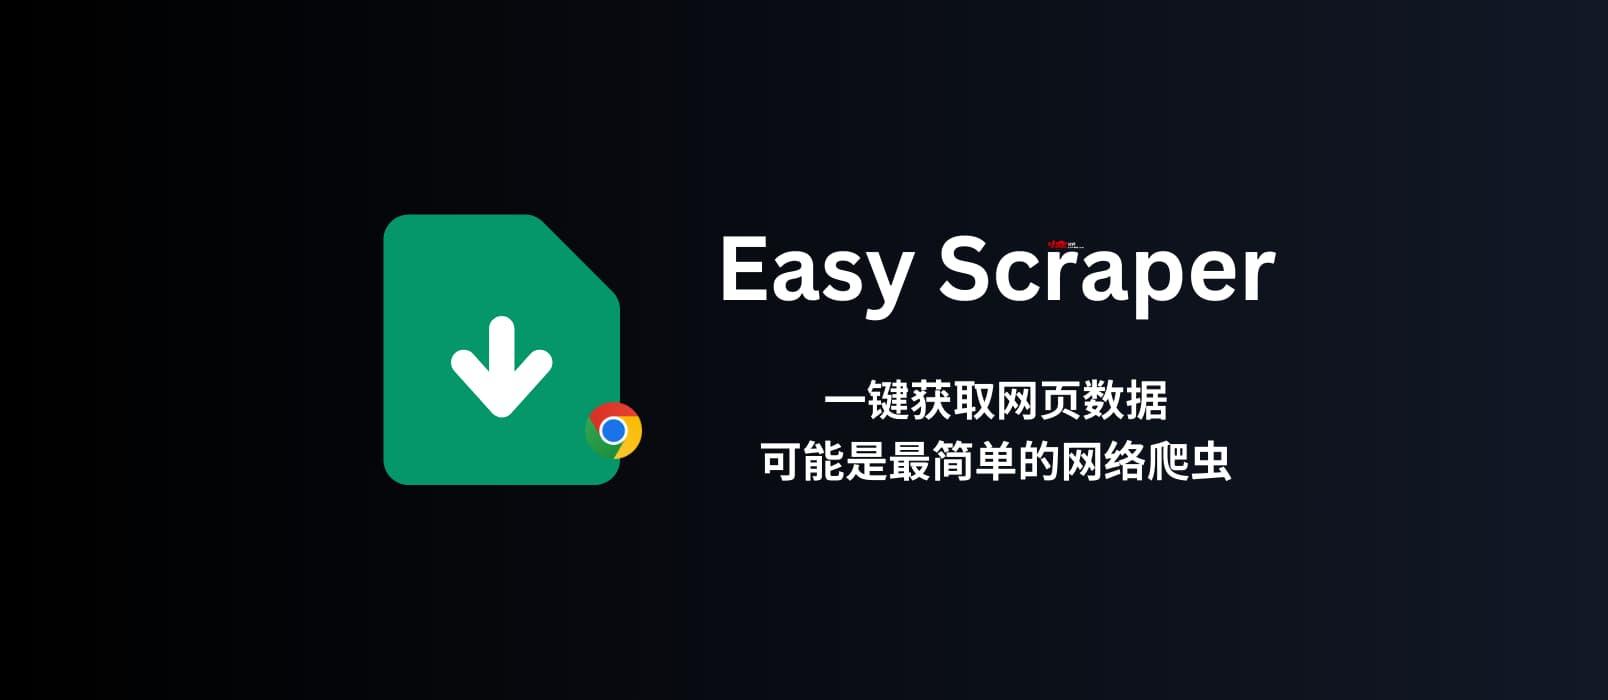 Easy Scraper - 不用編程，可視化爬蟲，一鍵獲取網頁數據，可能是最簡單的網絡爬蟲了 [Chrome] 1